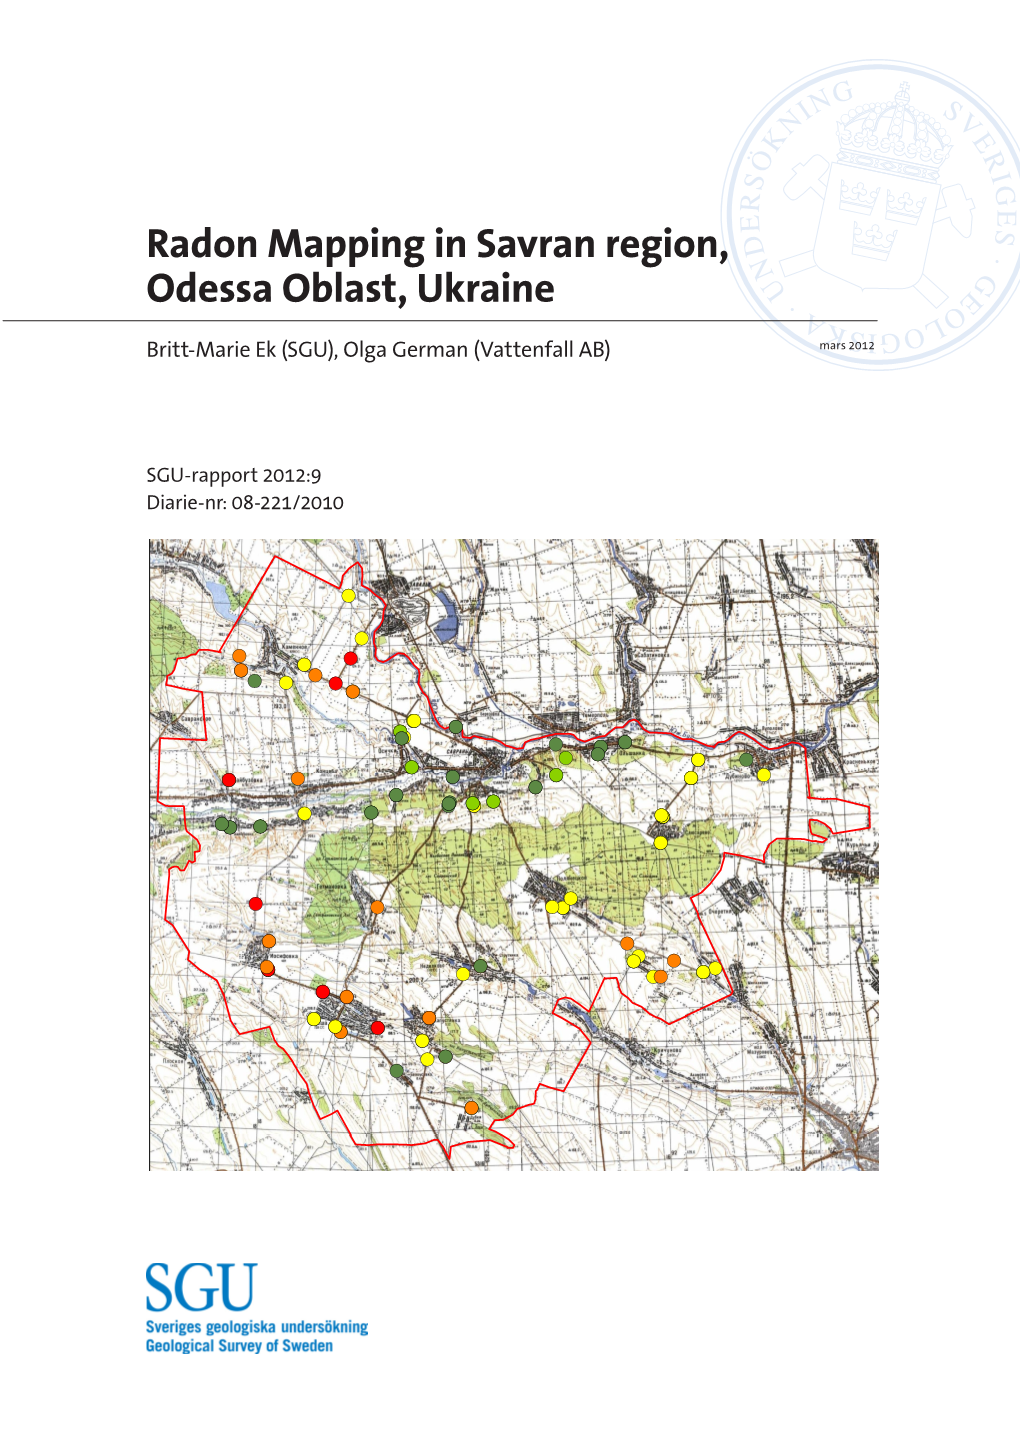 Radon Mapping in Savran Region, Odessa Oblast, Ukraine